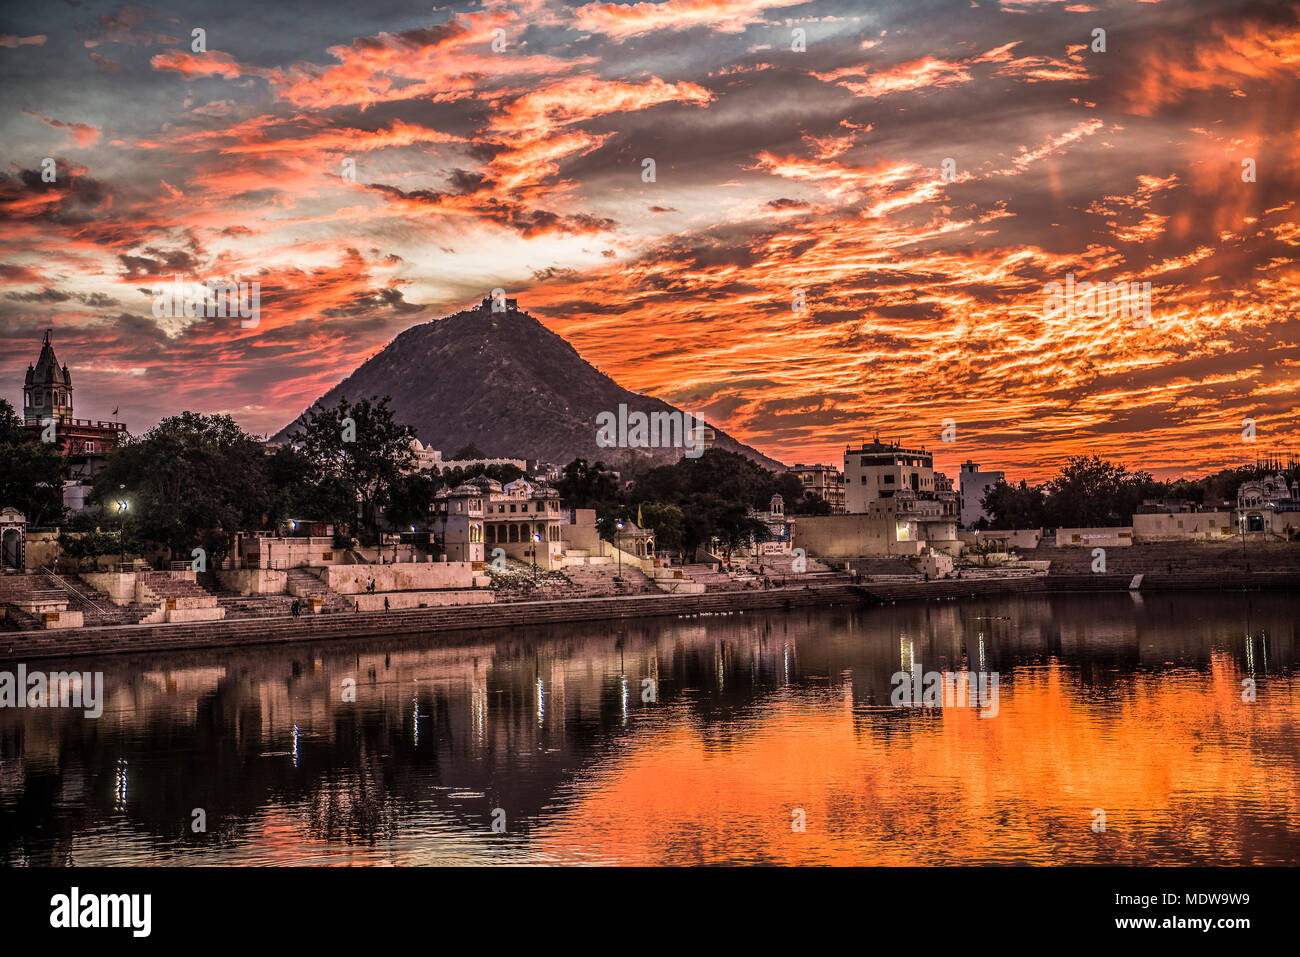 Inde Rajasthan Pushkar Vue de ville et le lac Banque D'Images